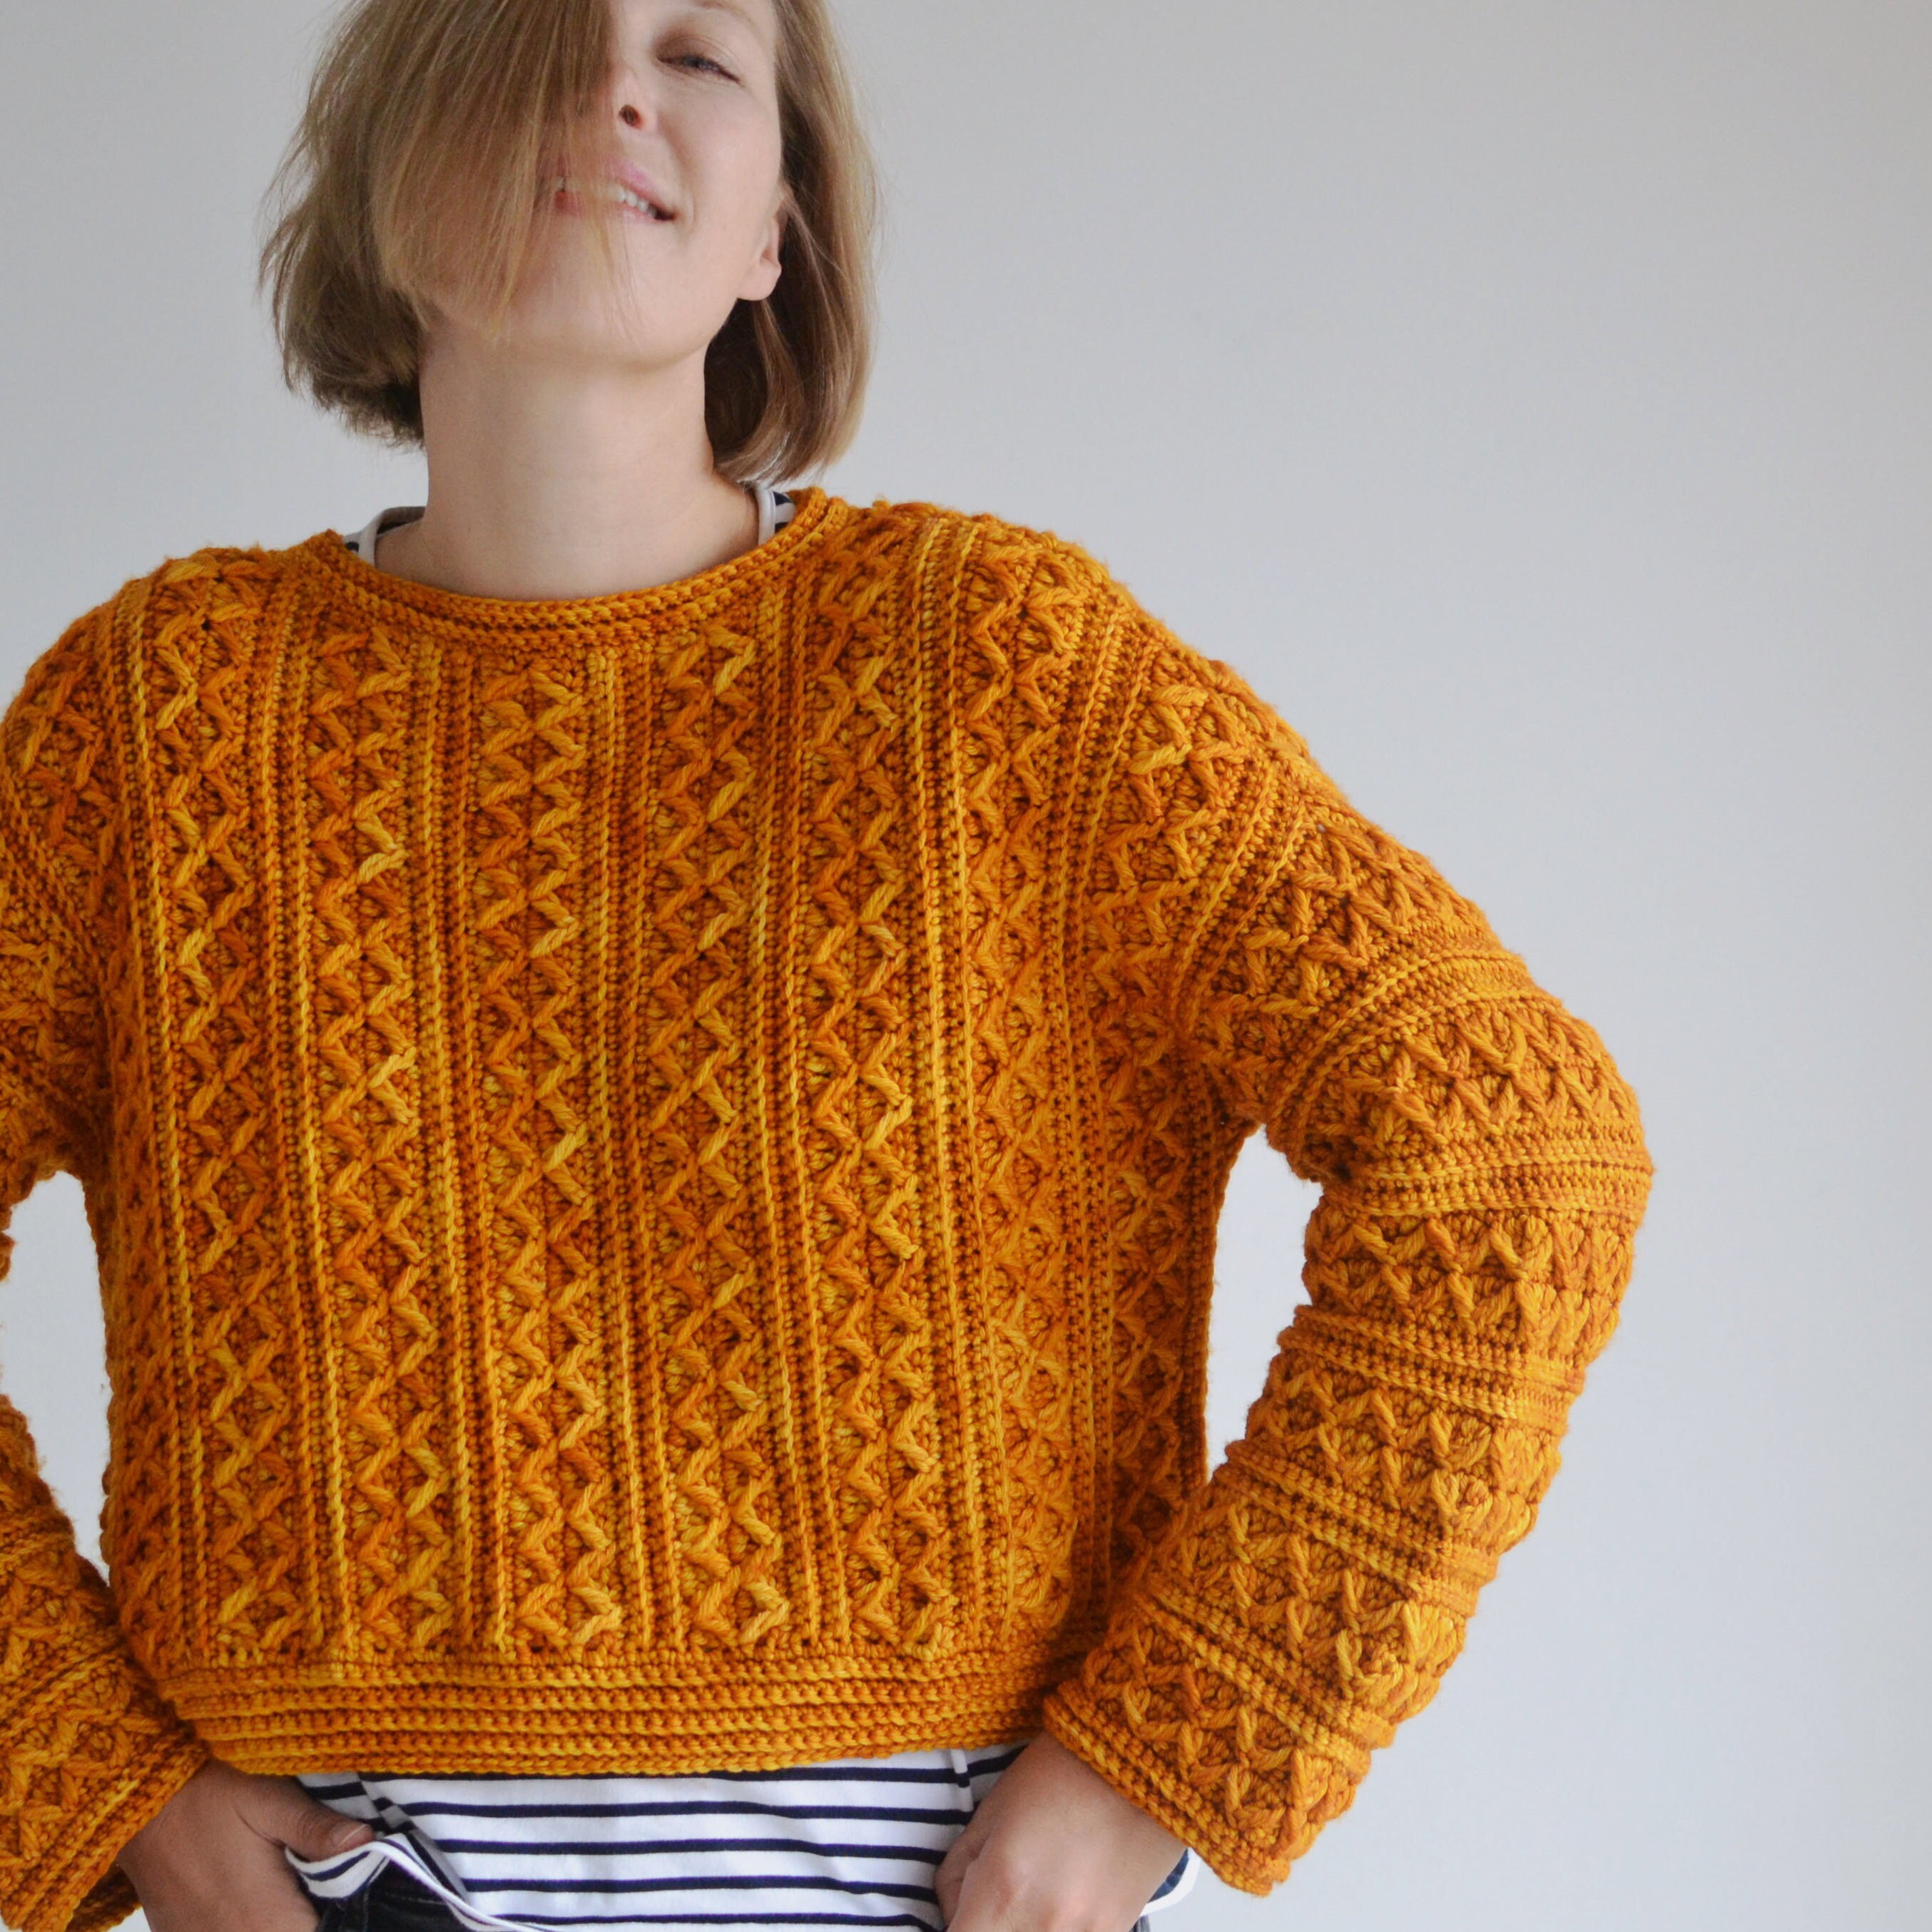 Candied Orange Sweater PDF Pattern Crochet - Etsy